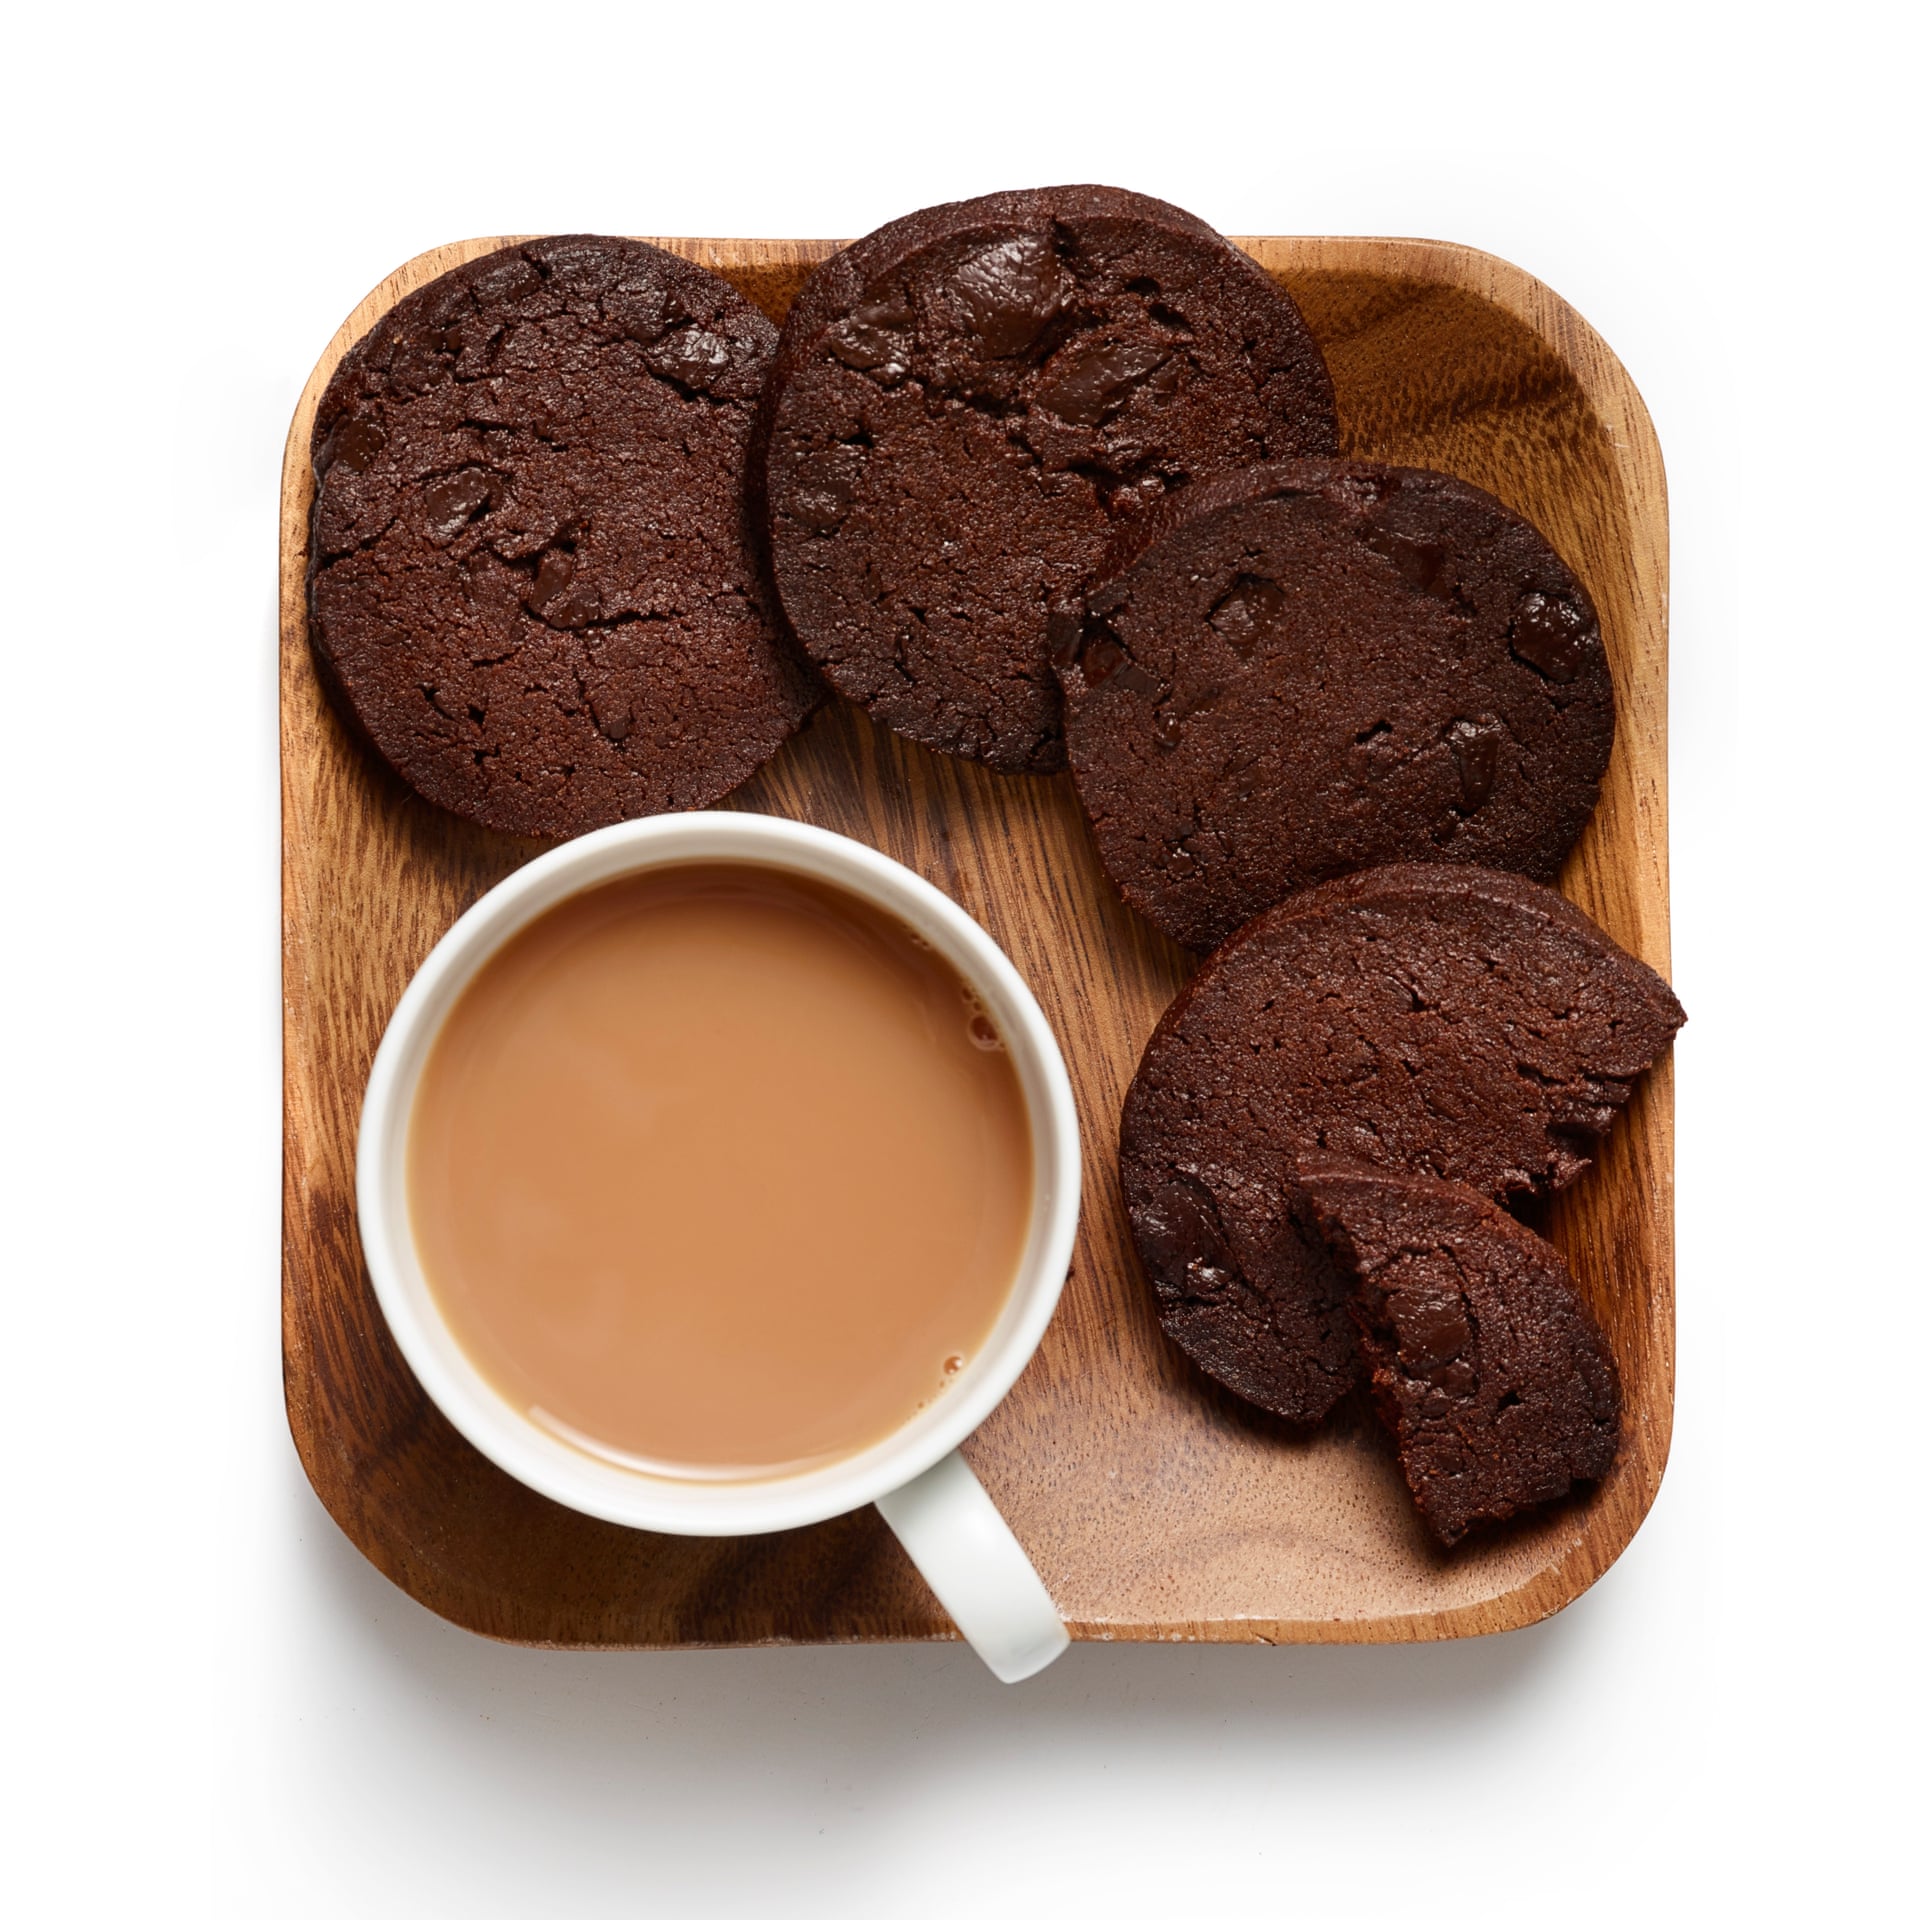 Печенье домашнее какао. Печенье с какао. Печеньки с какао. Печенье с шоколадом. Шоколадные печеньки с какао.